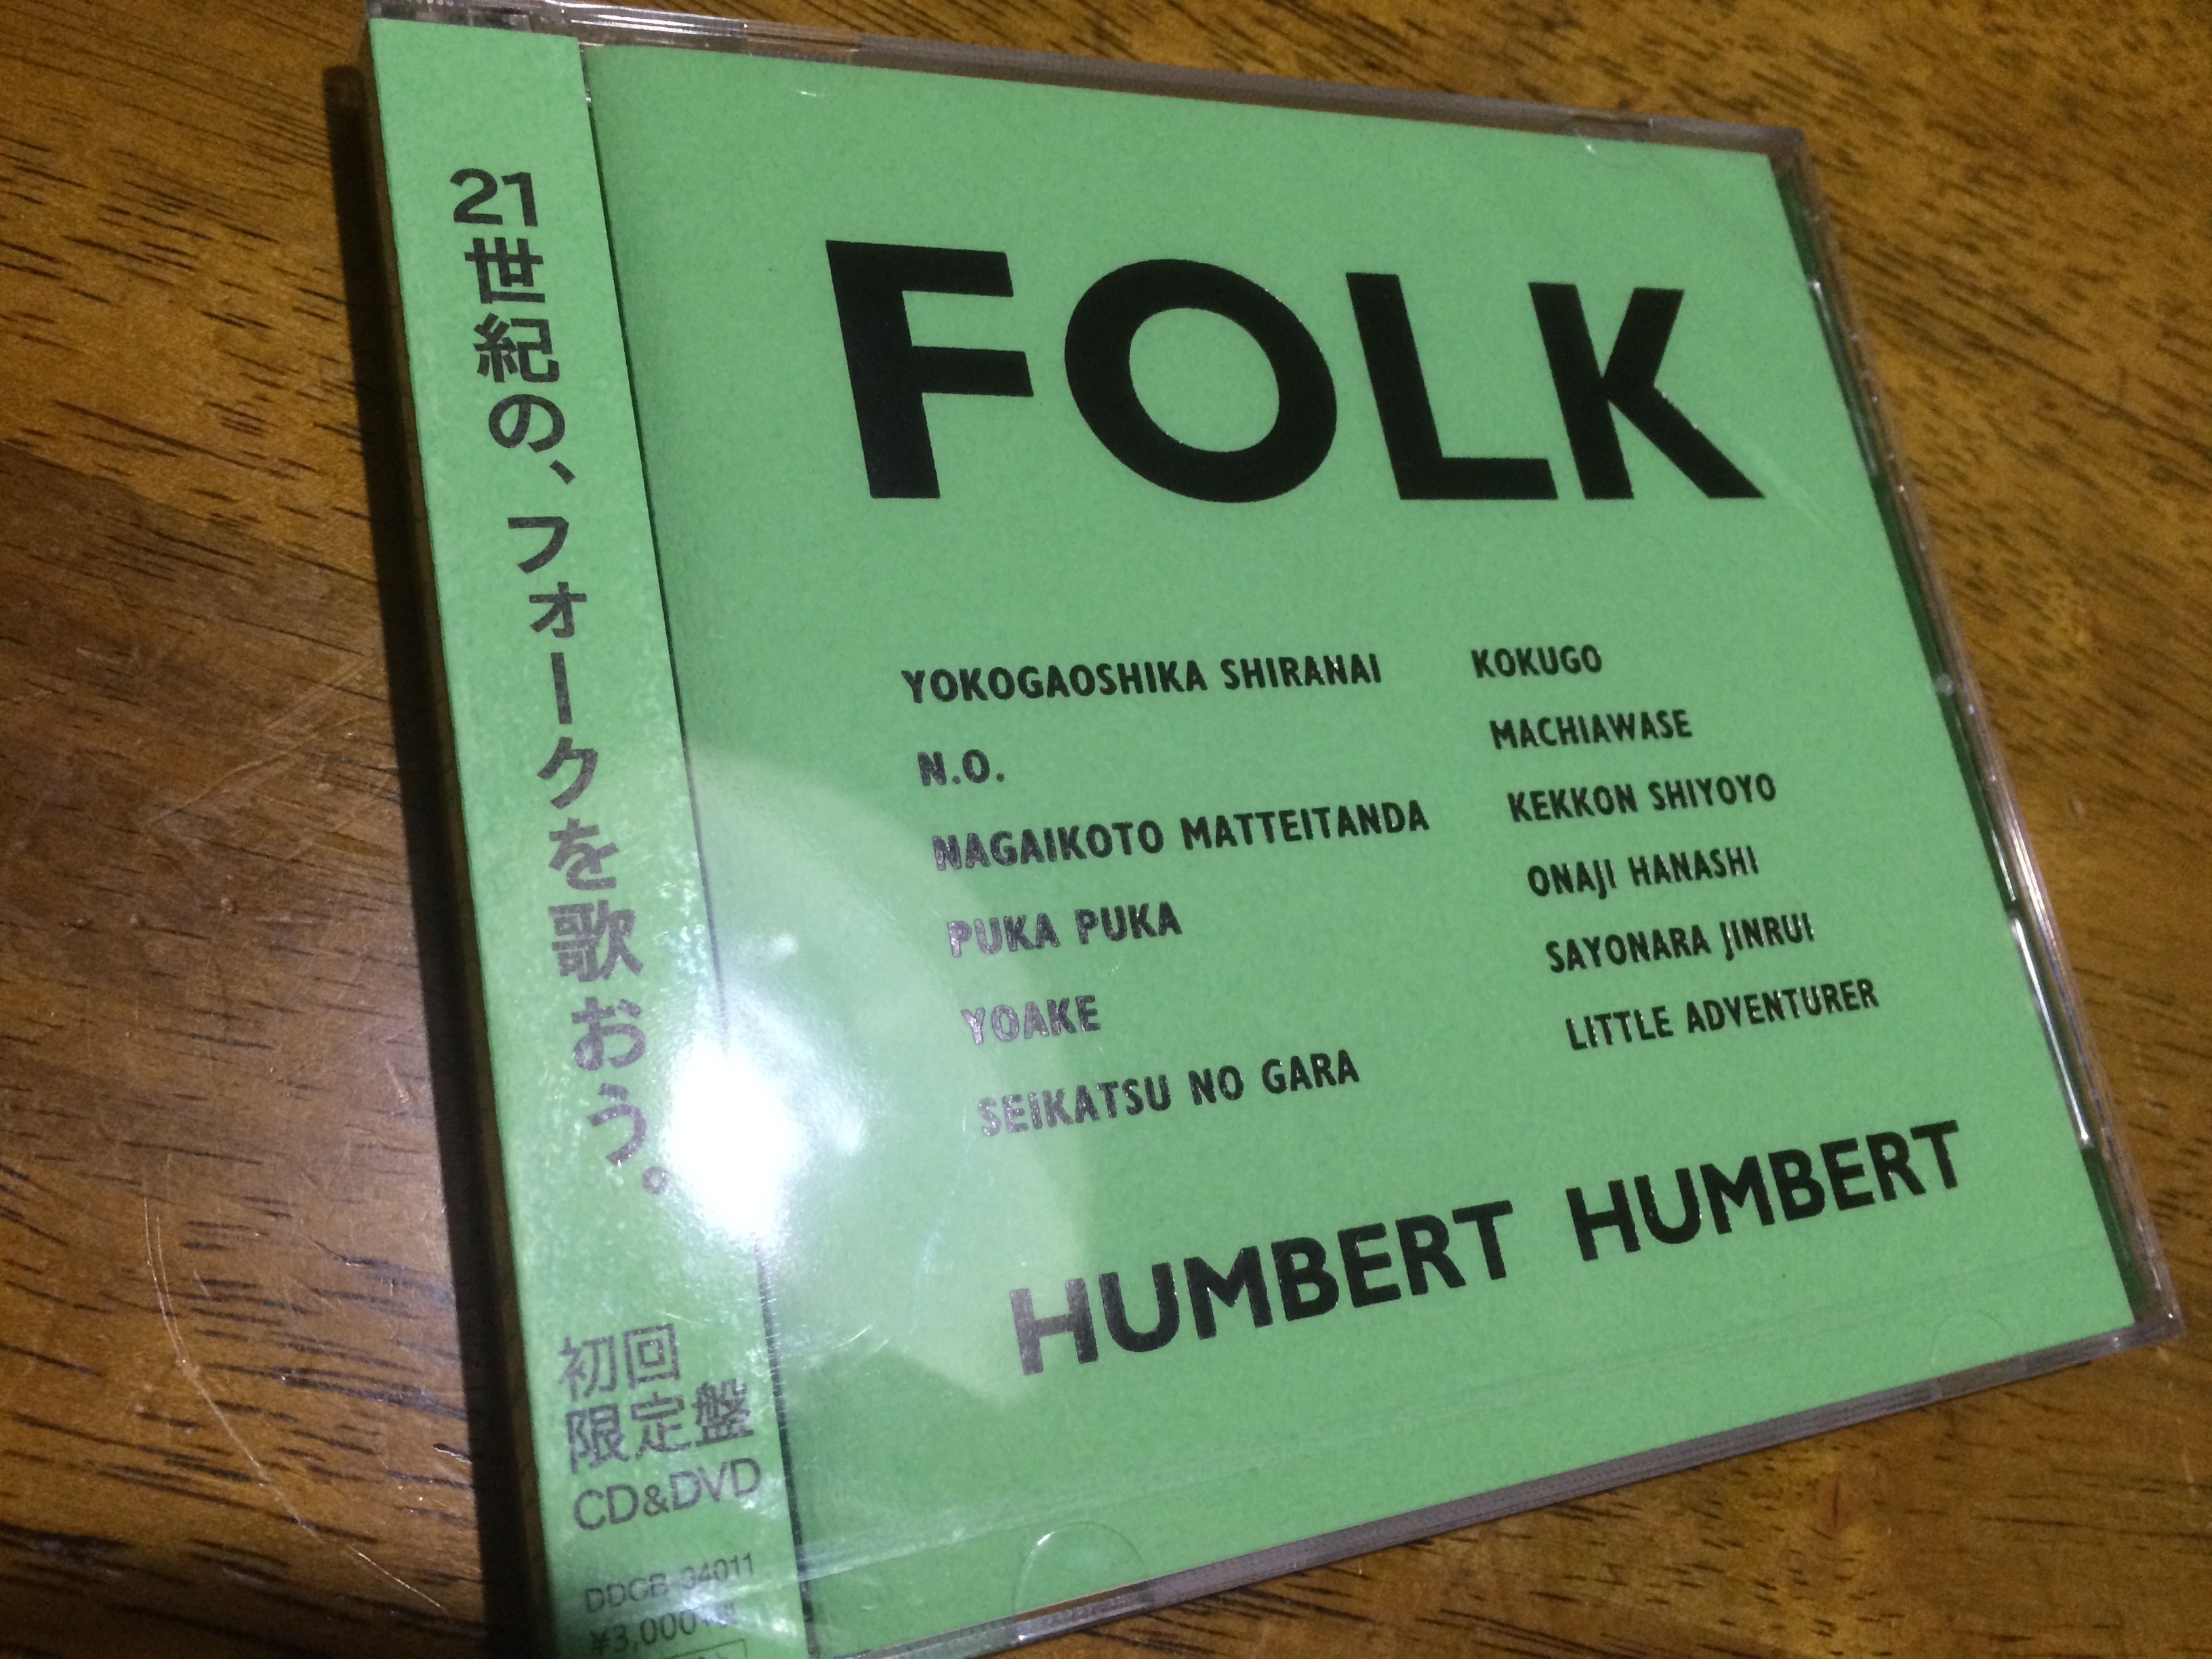 15周年記念アルバム、ハンバートハンバート「FOLK」全曲感想を書いてみた。